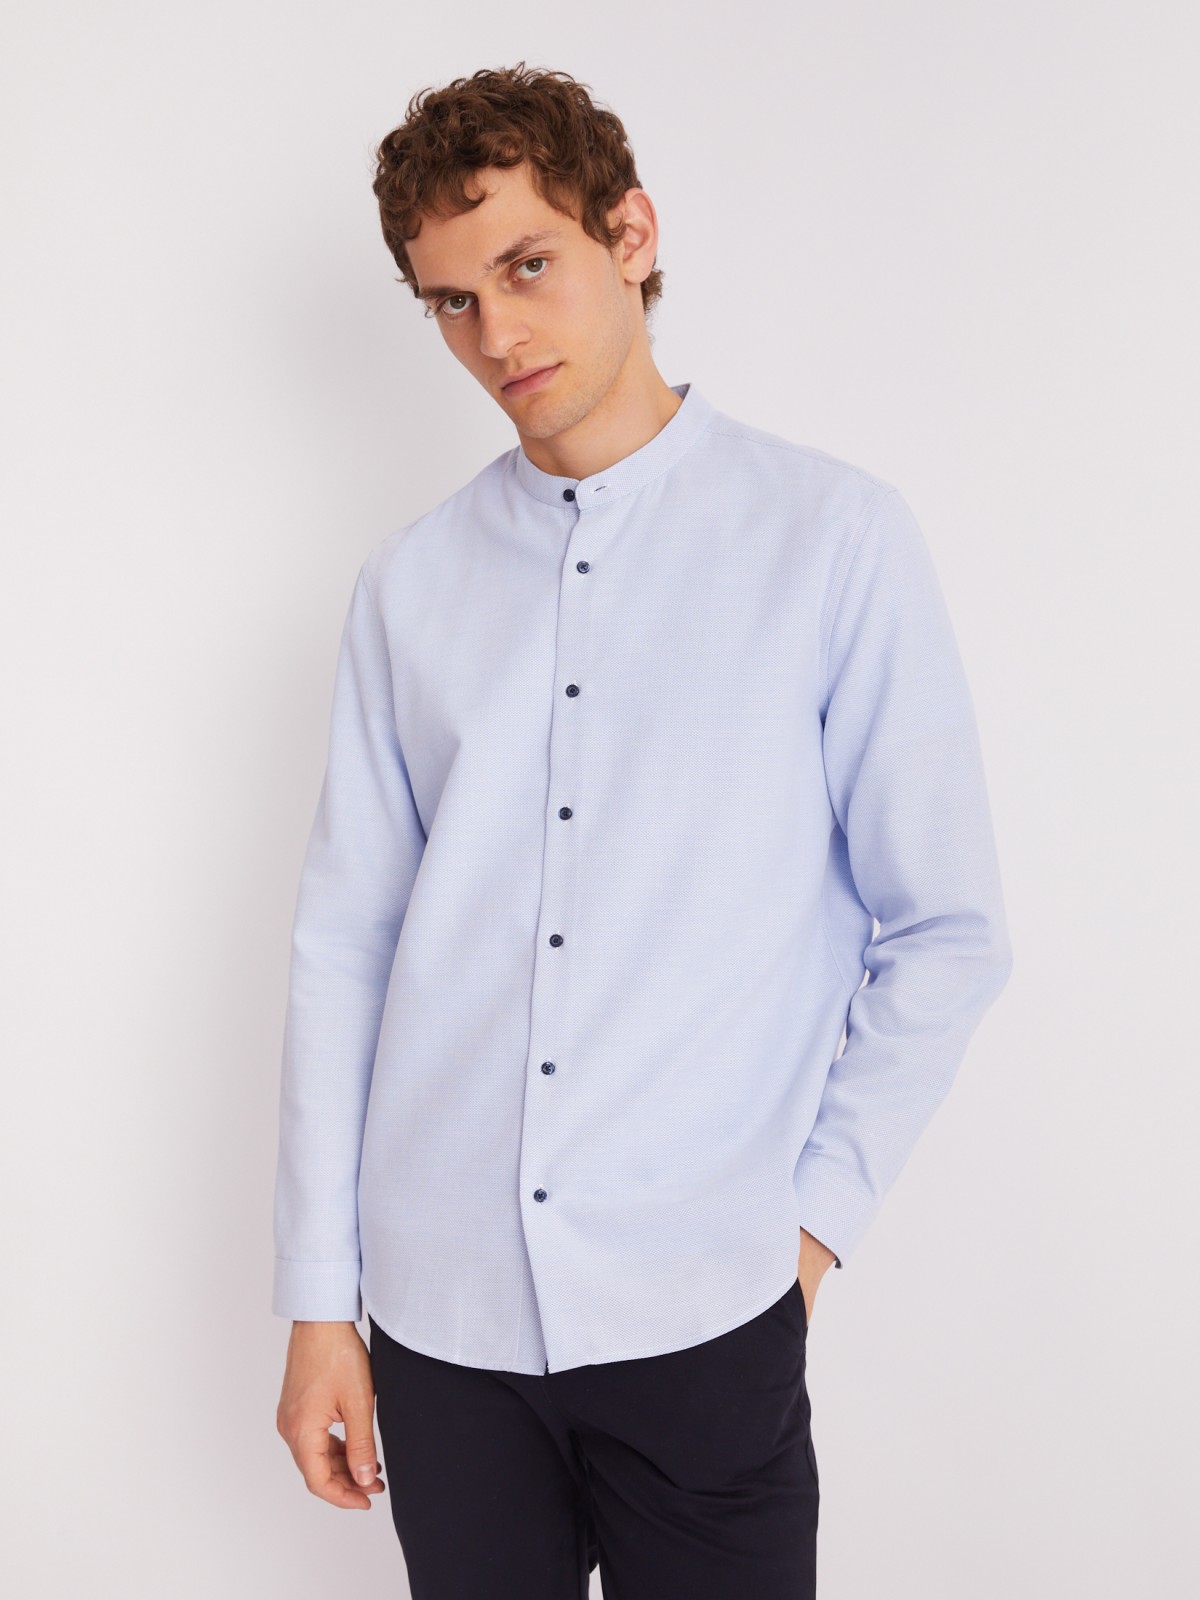 Офисная рубашка с воротником-стойкой и длинным рукавом zolla 013312159023, цвет светло-голубой, размер S - фото 4